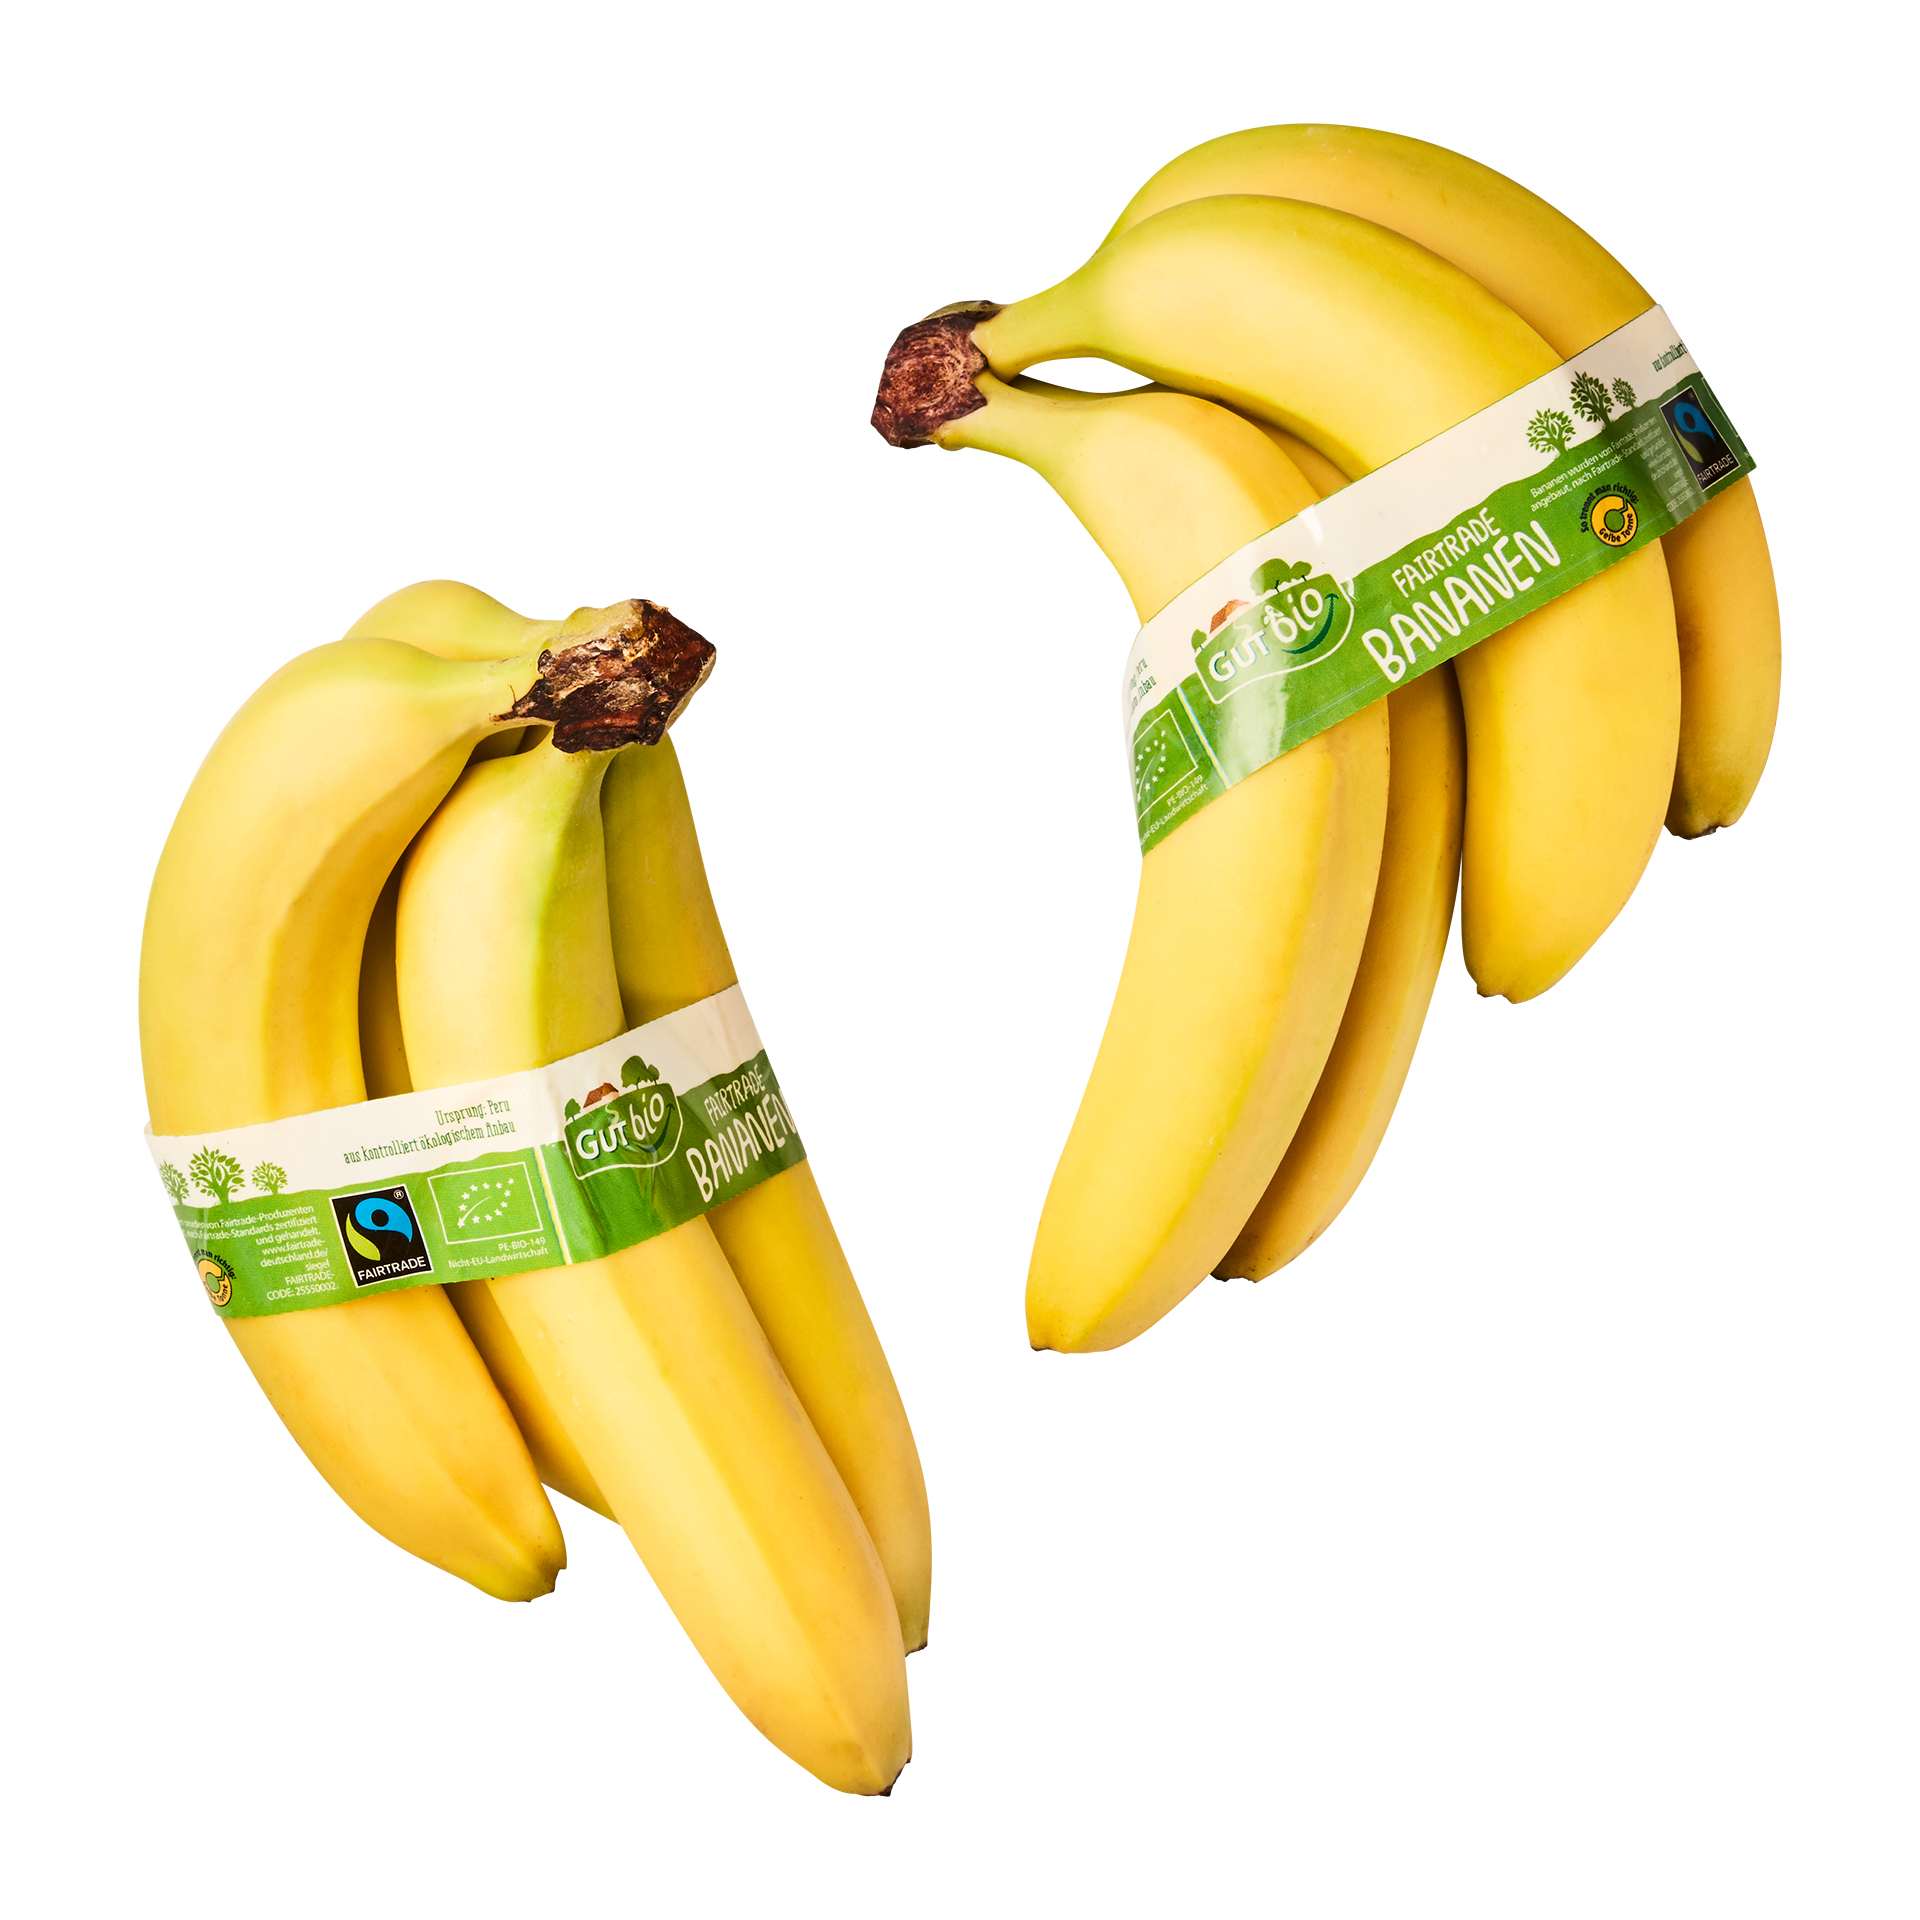 GUT BIO Bio-Bananen, Fairtrade günstig bei Nord ALDI